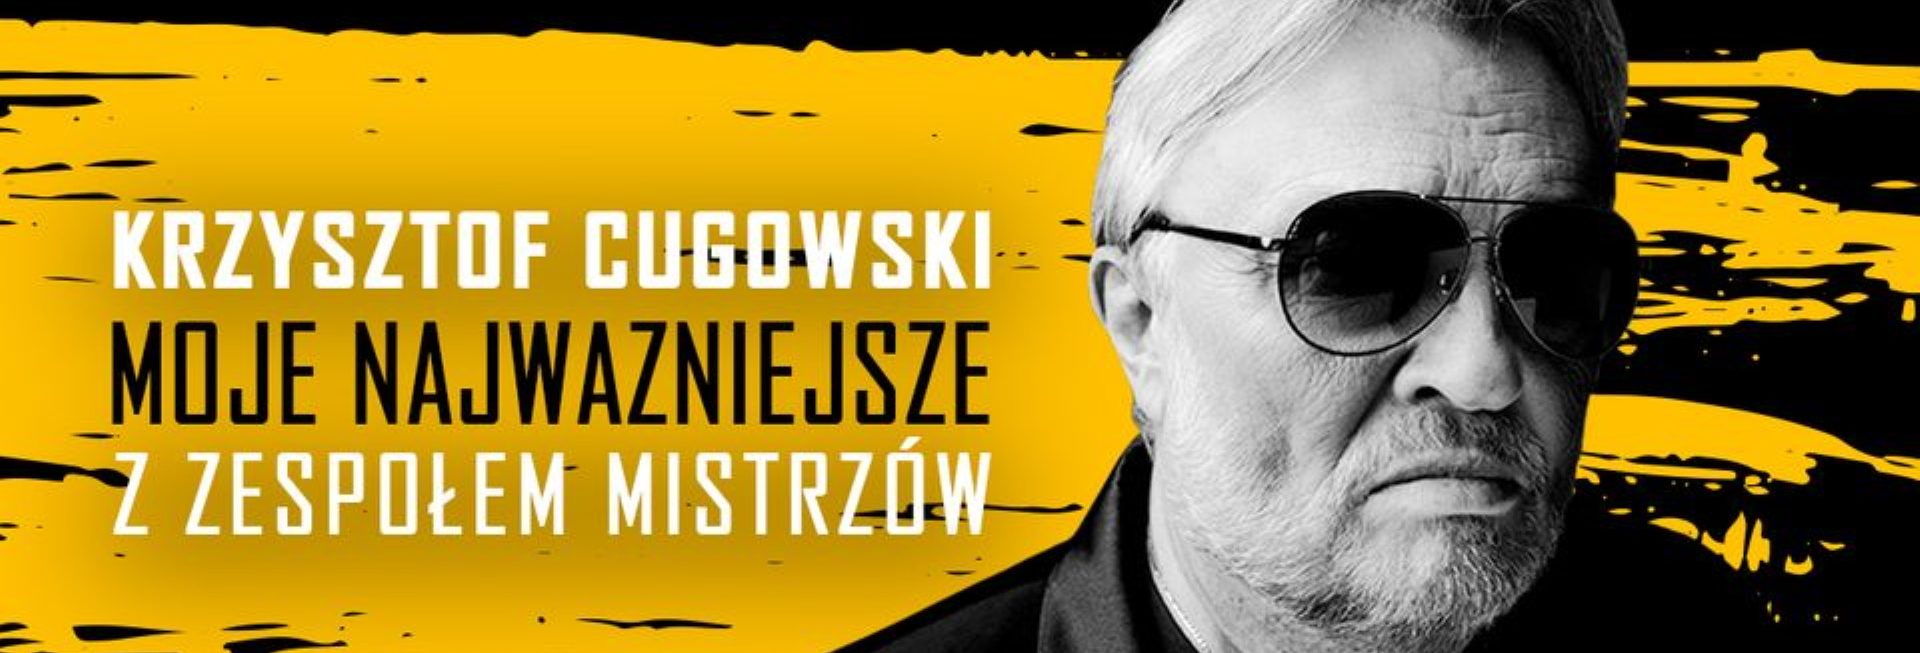 Plakat zapraszający do Olsztyna na występ Krzysztofa Cugowskiego z Zespołem Mistrzów - Moje Najważniejsze Olsztyn 2023.